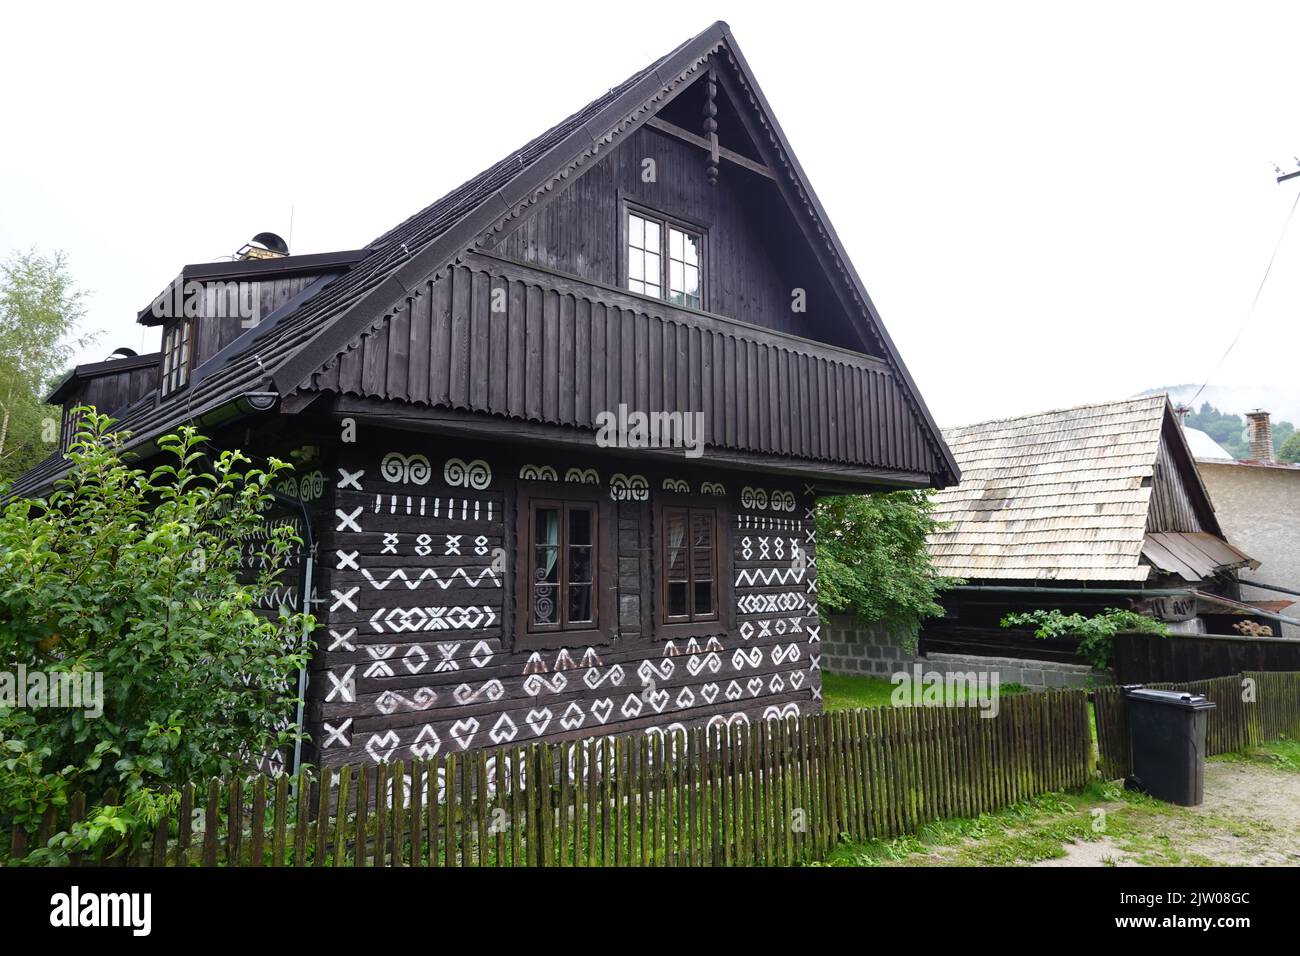 Belles maisons en bois peintes dans le village slovaque historique de Cicloy, en Slovaquie, en Europe centrale Banque D'Images